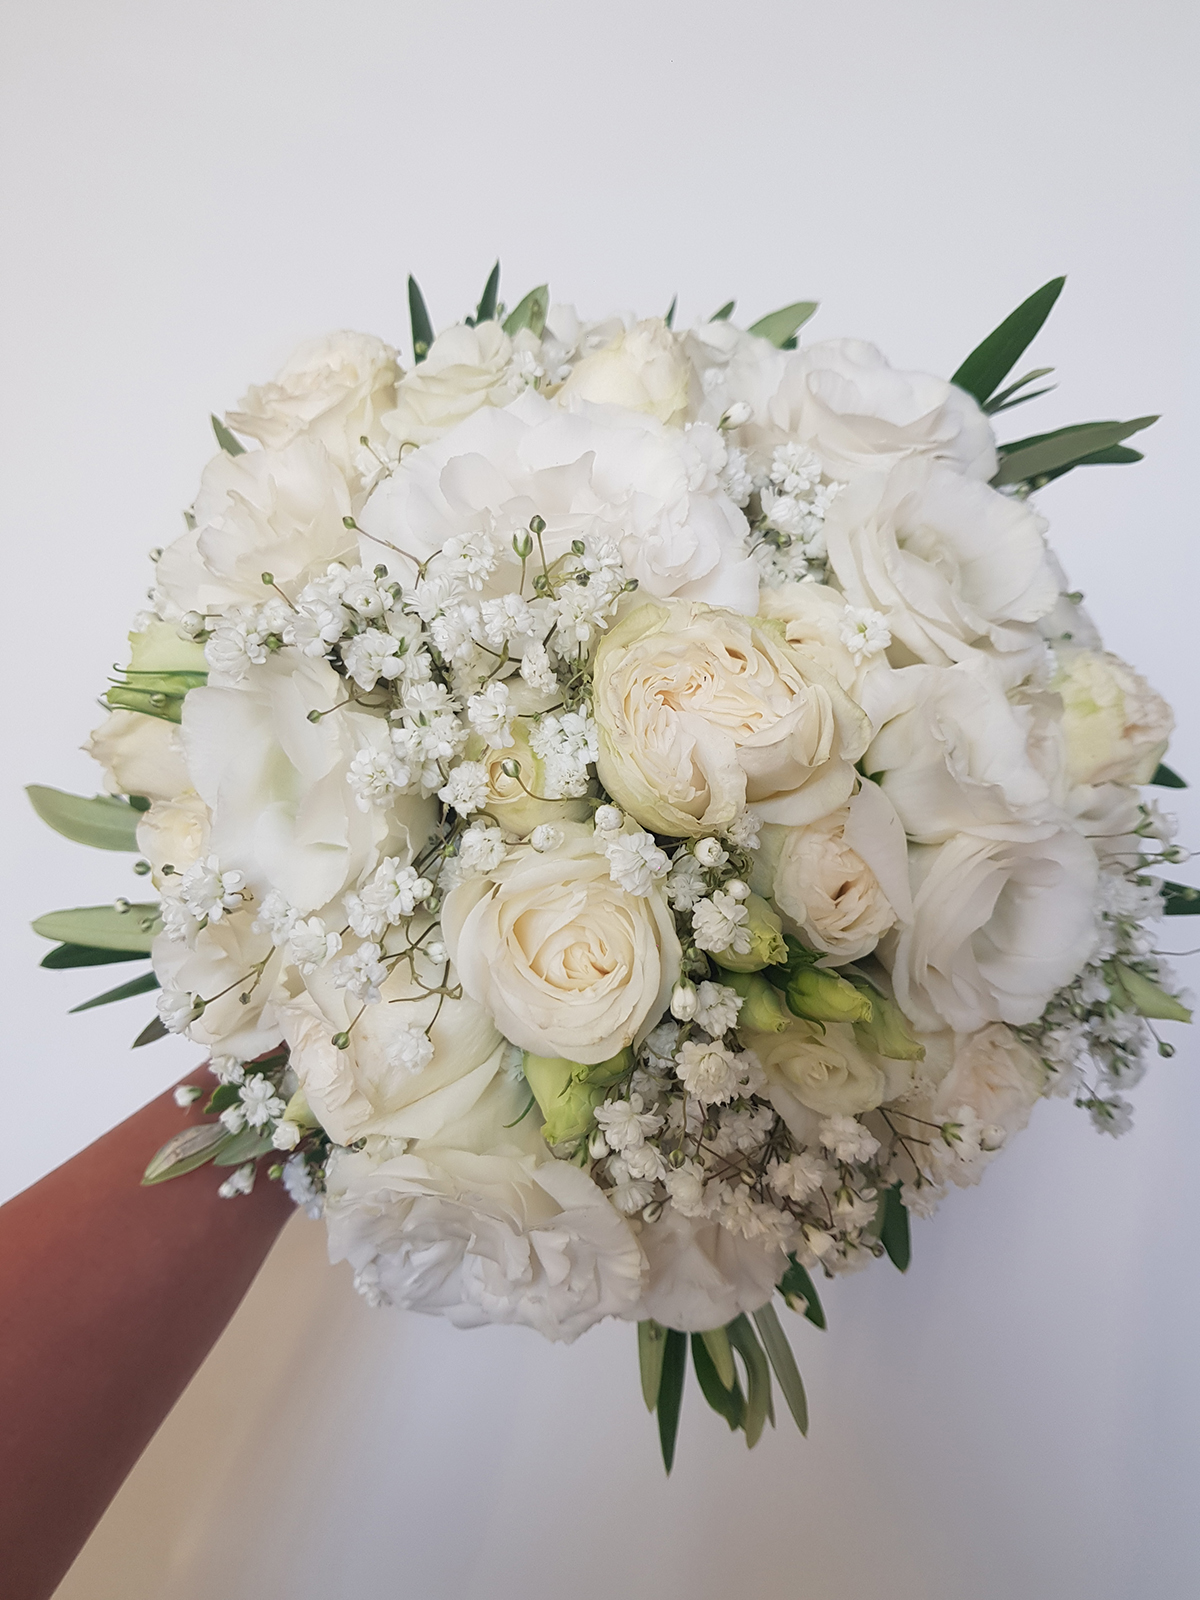 Descubra 48 kuva bouquet de fleurs mariage blanc - Thptnganamst.edu.vn